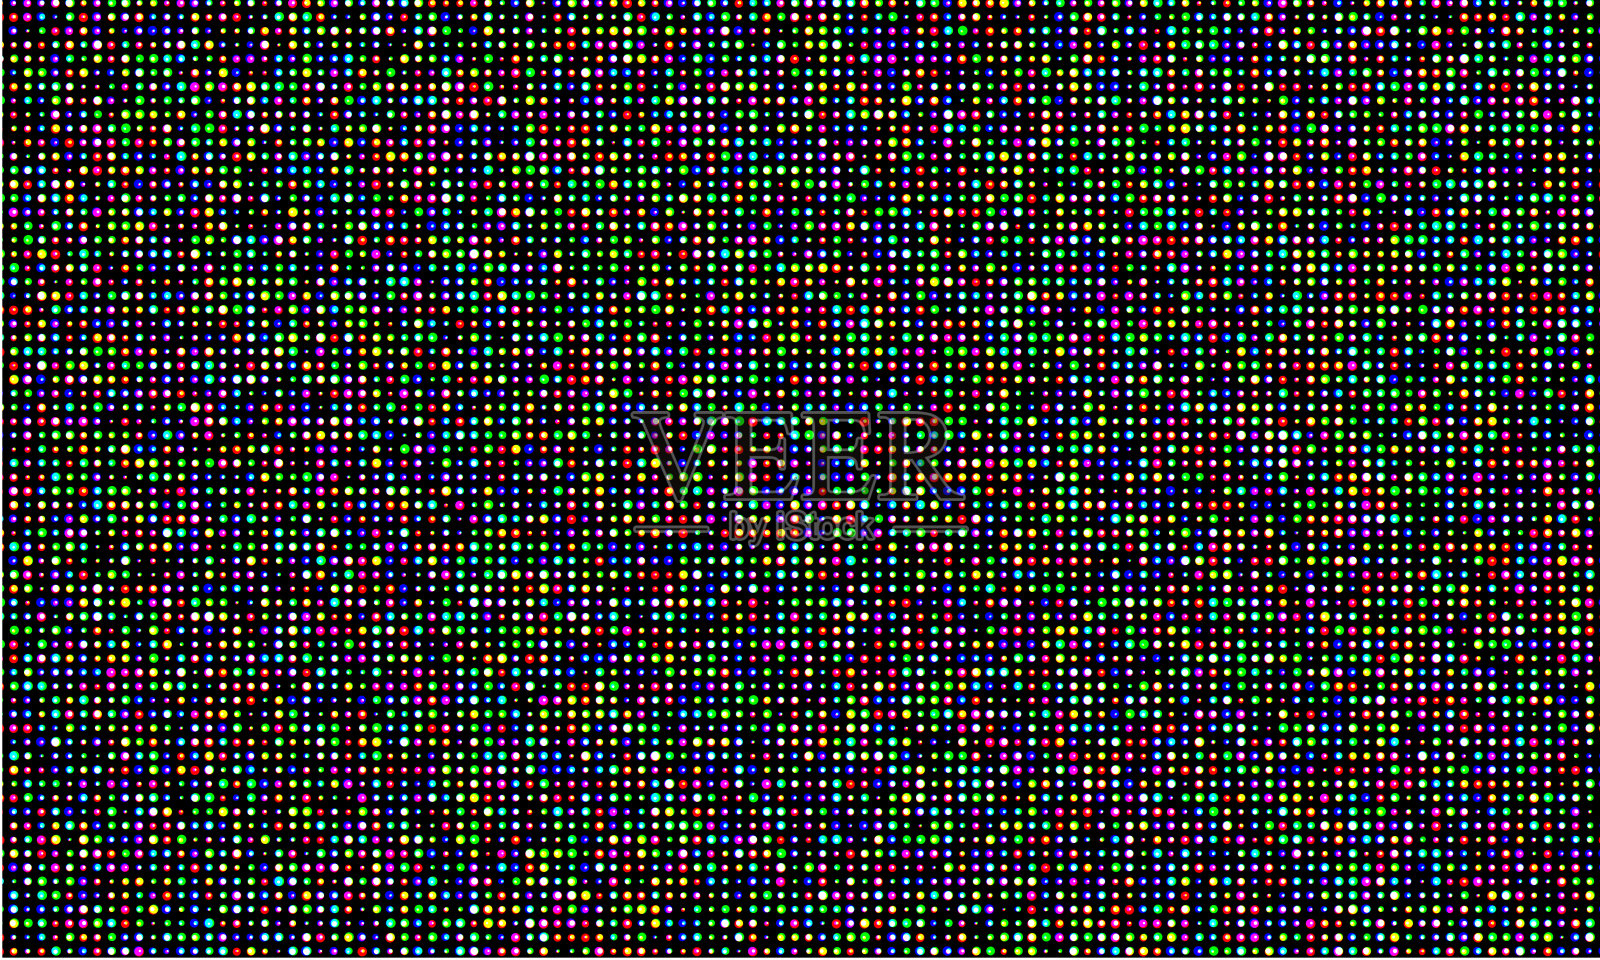 彩色LED视频墙屏，RGB彩色发光二极管网点网格纹理。矢量数字LED视频面板网格图案背景插画图片素材